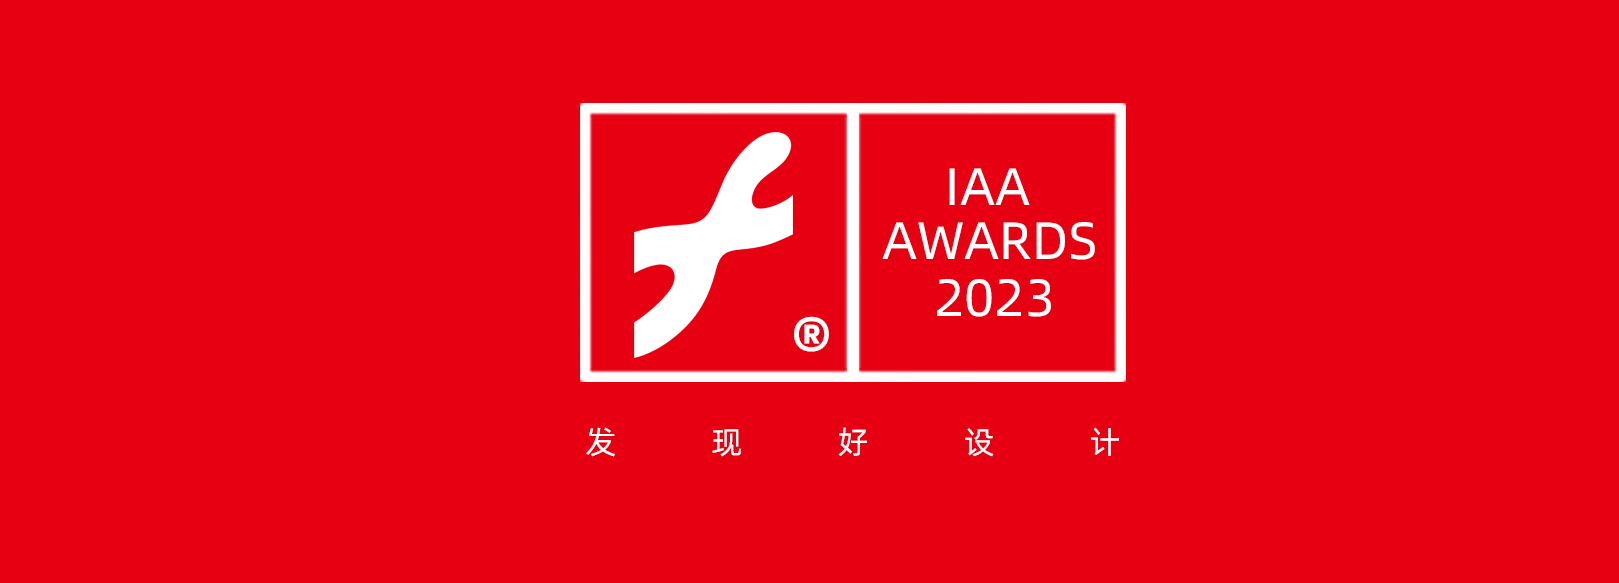 2023 互艺奖 / Interactive Art Awards